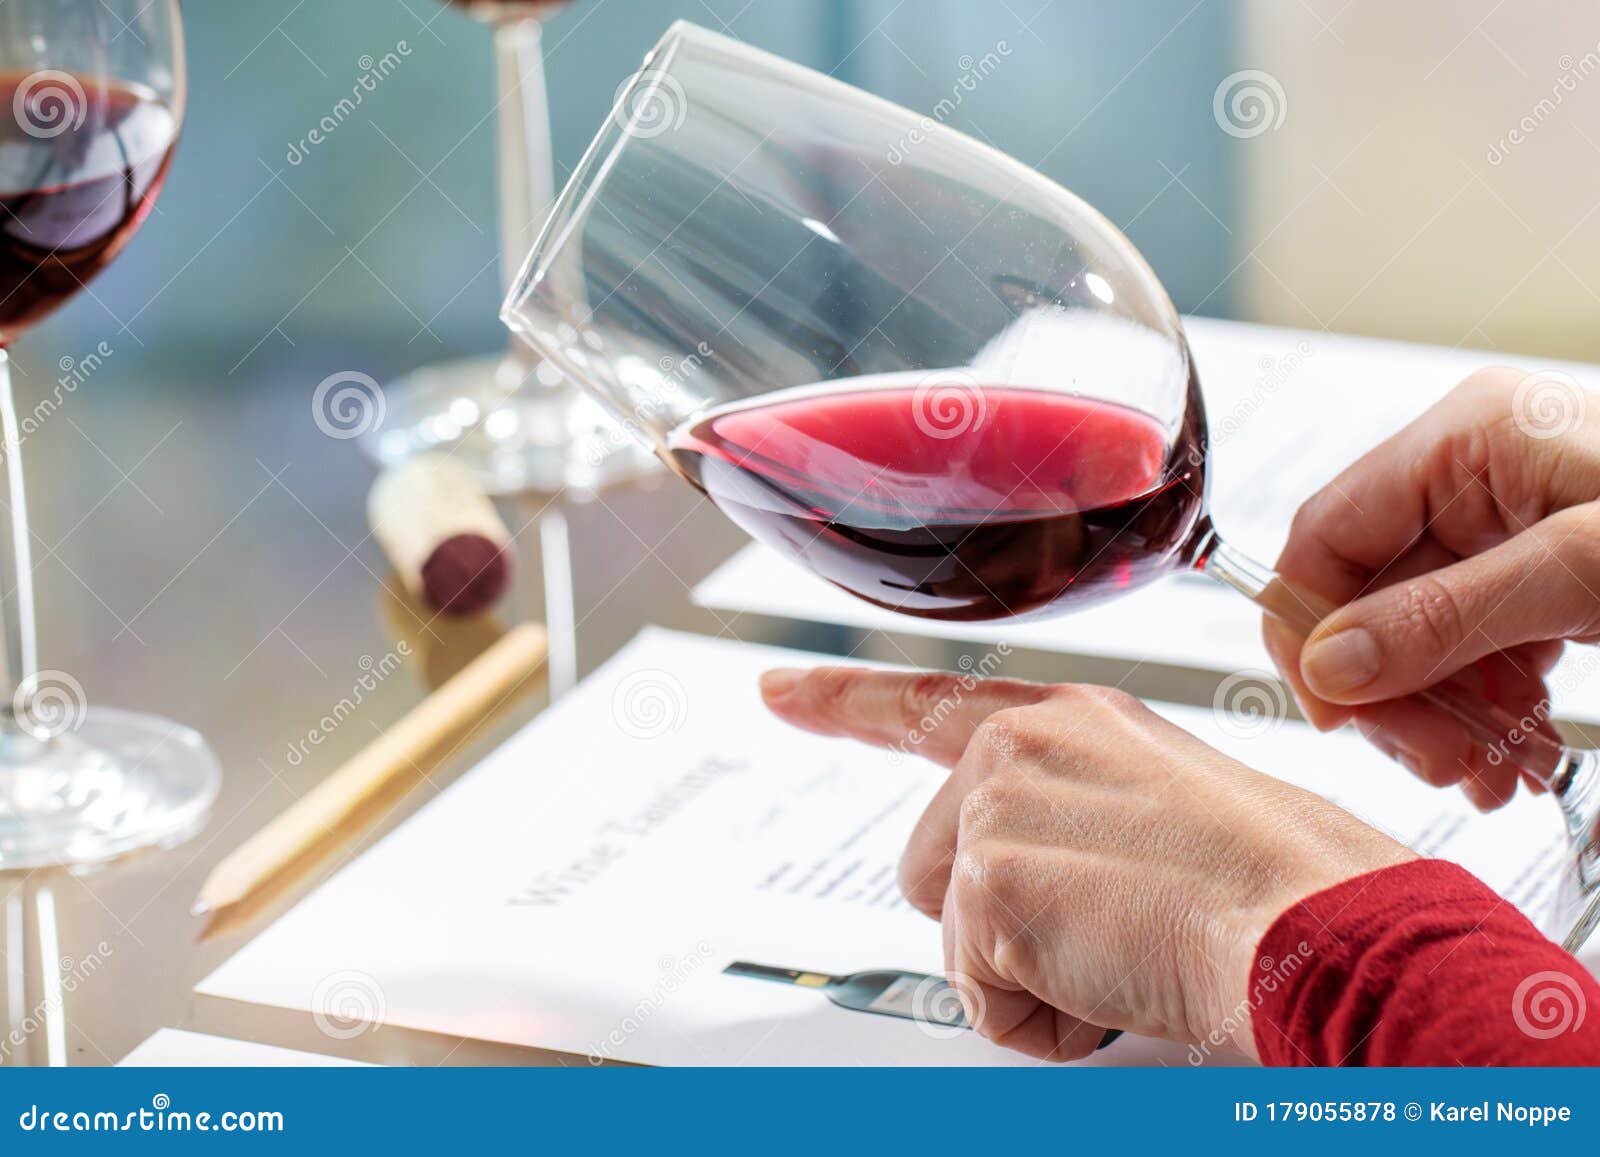 wine steward evaluating red wine density